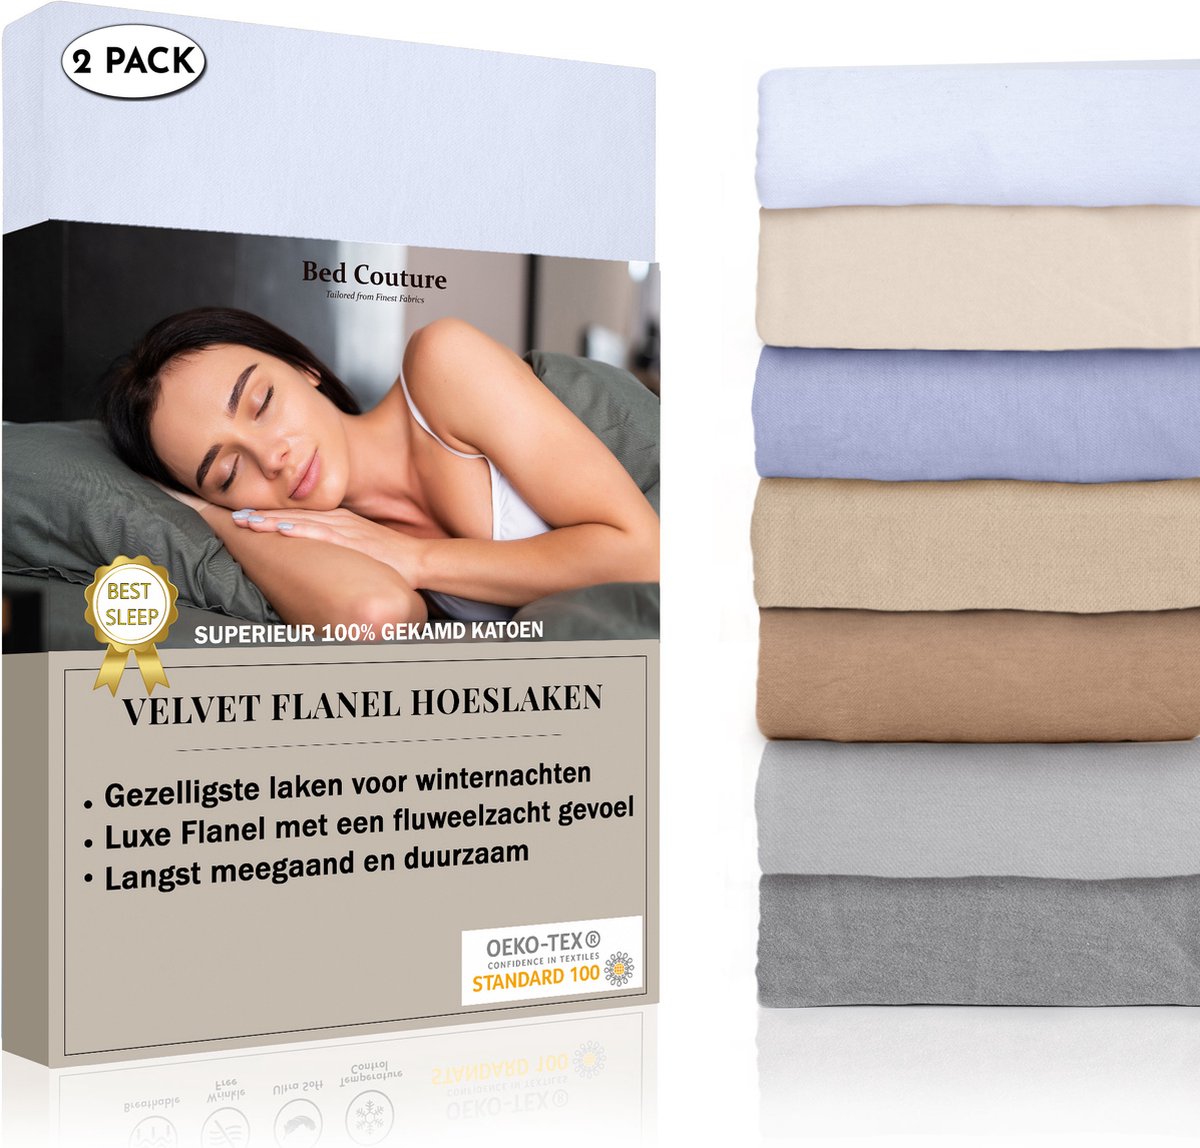 Bed Couture Velvet Flanel Hoeslaken - 100% Gekamd Katoen - Hoge Hoek 30cm - 2x Eenpersoons 90x200 cm - Wit (2-Pack)